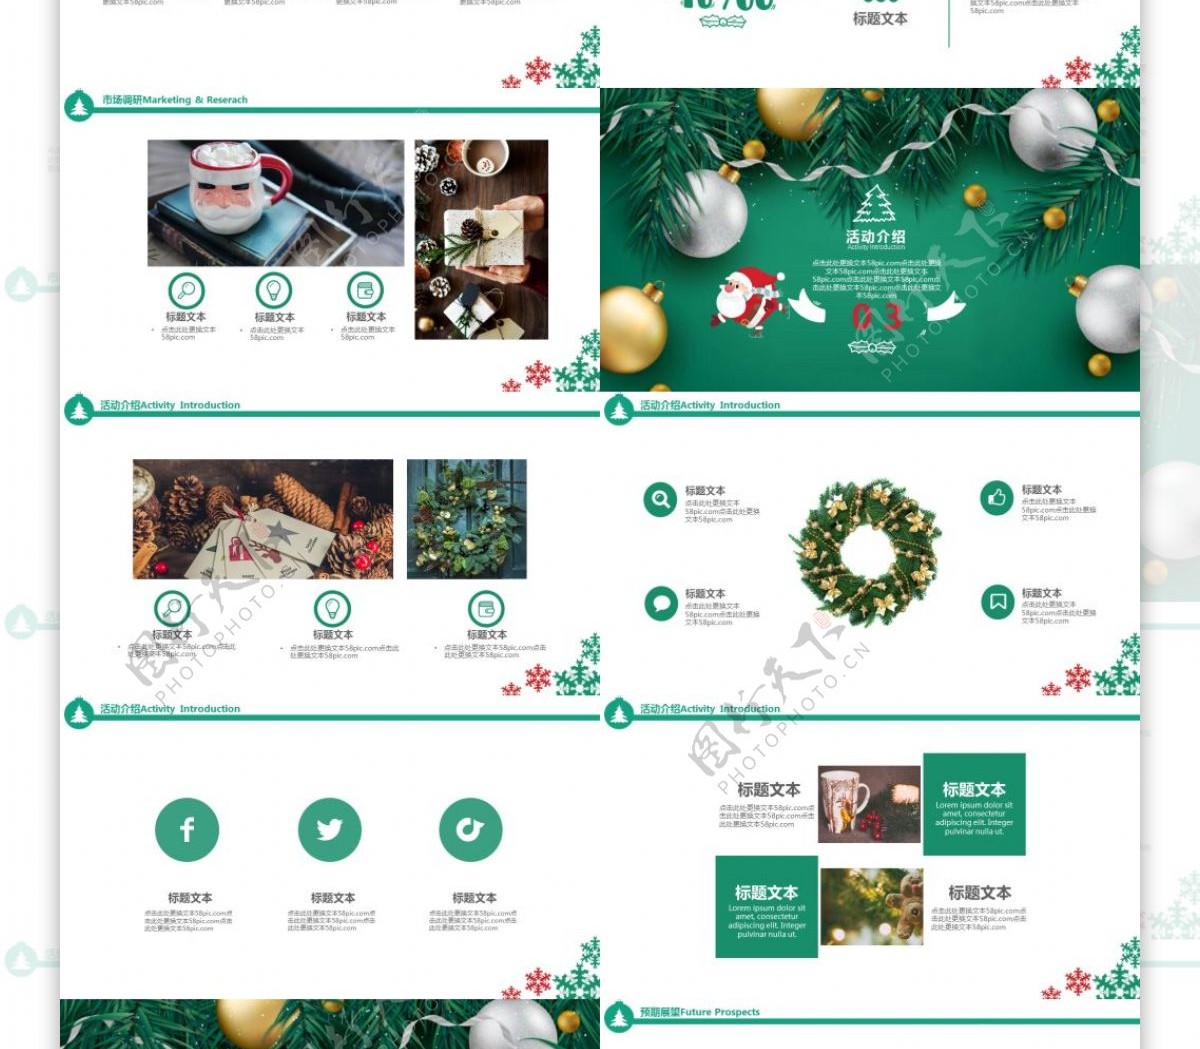 绿色圣诞节活动宣传策划PPT设计模板